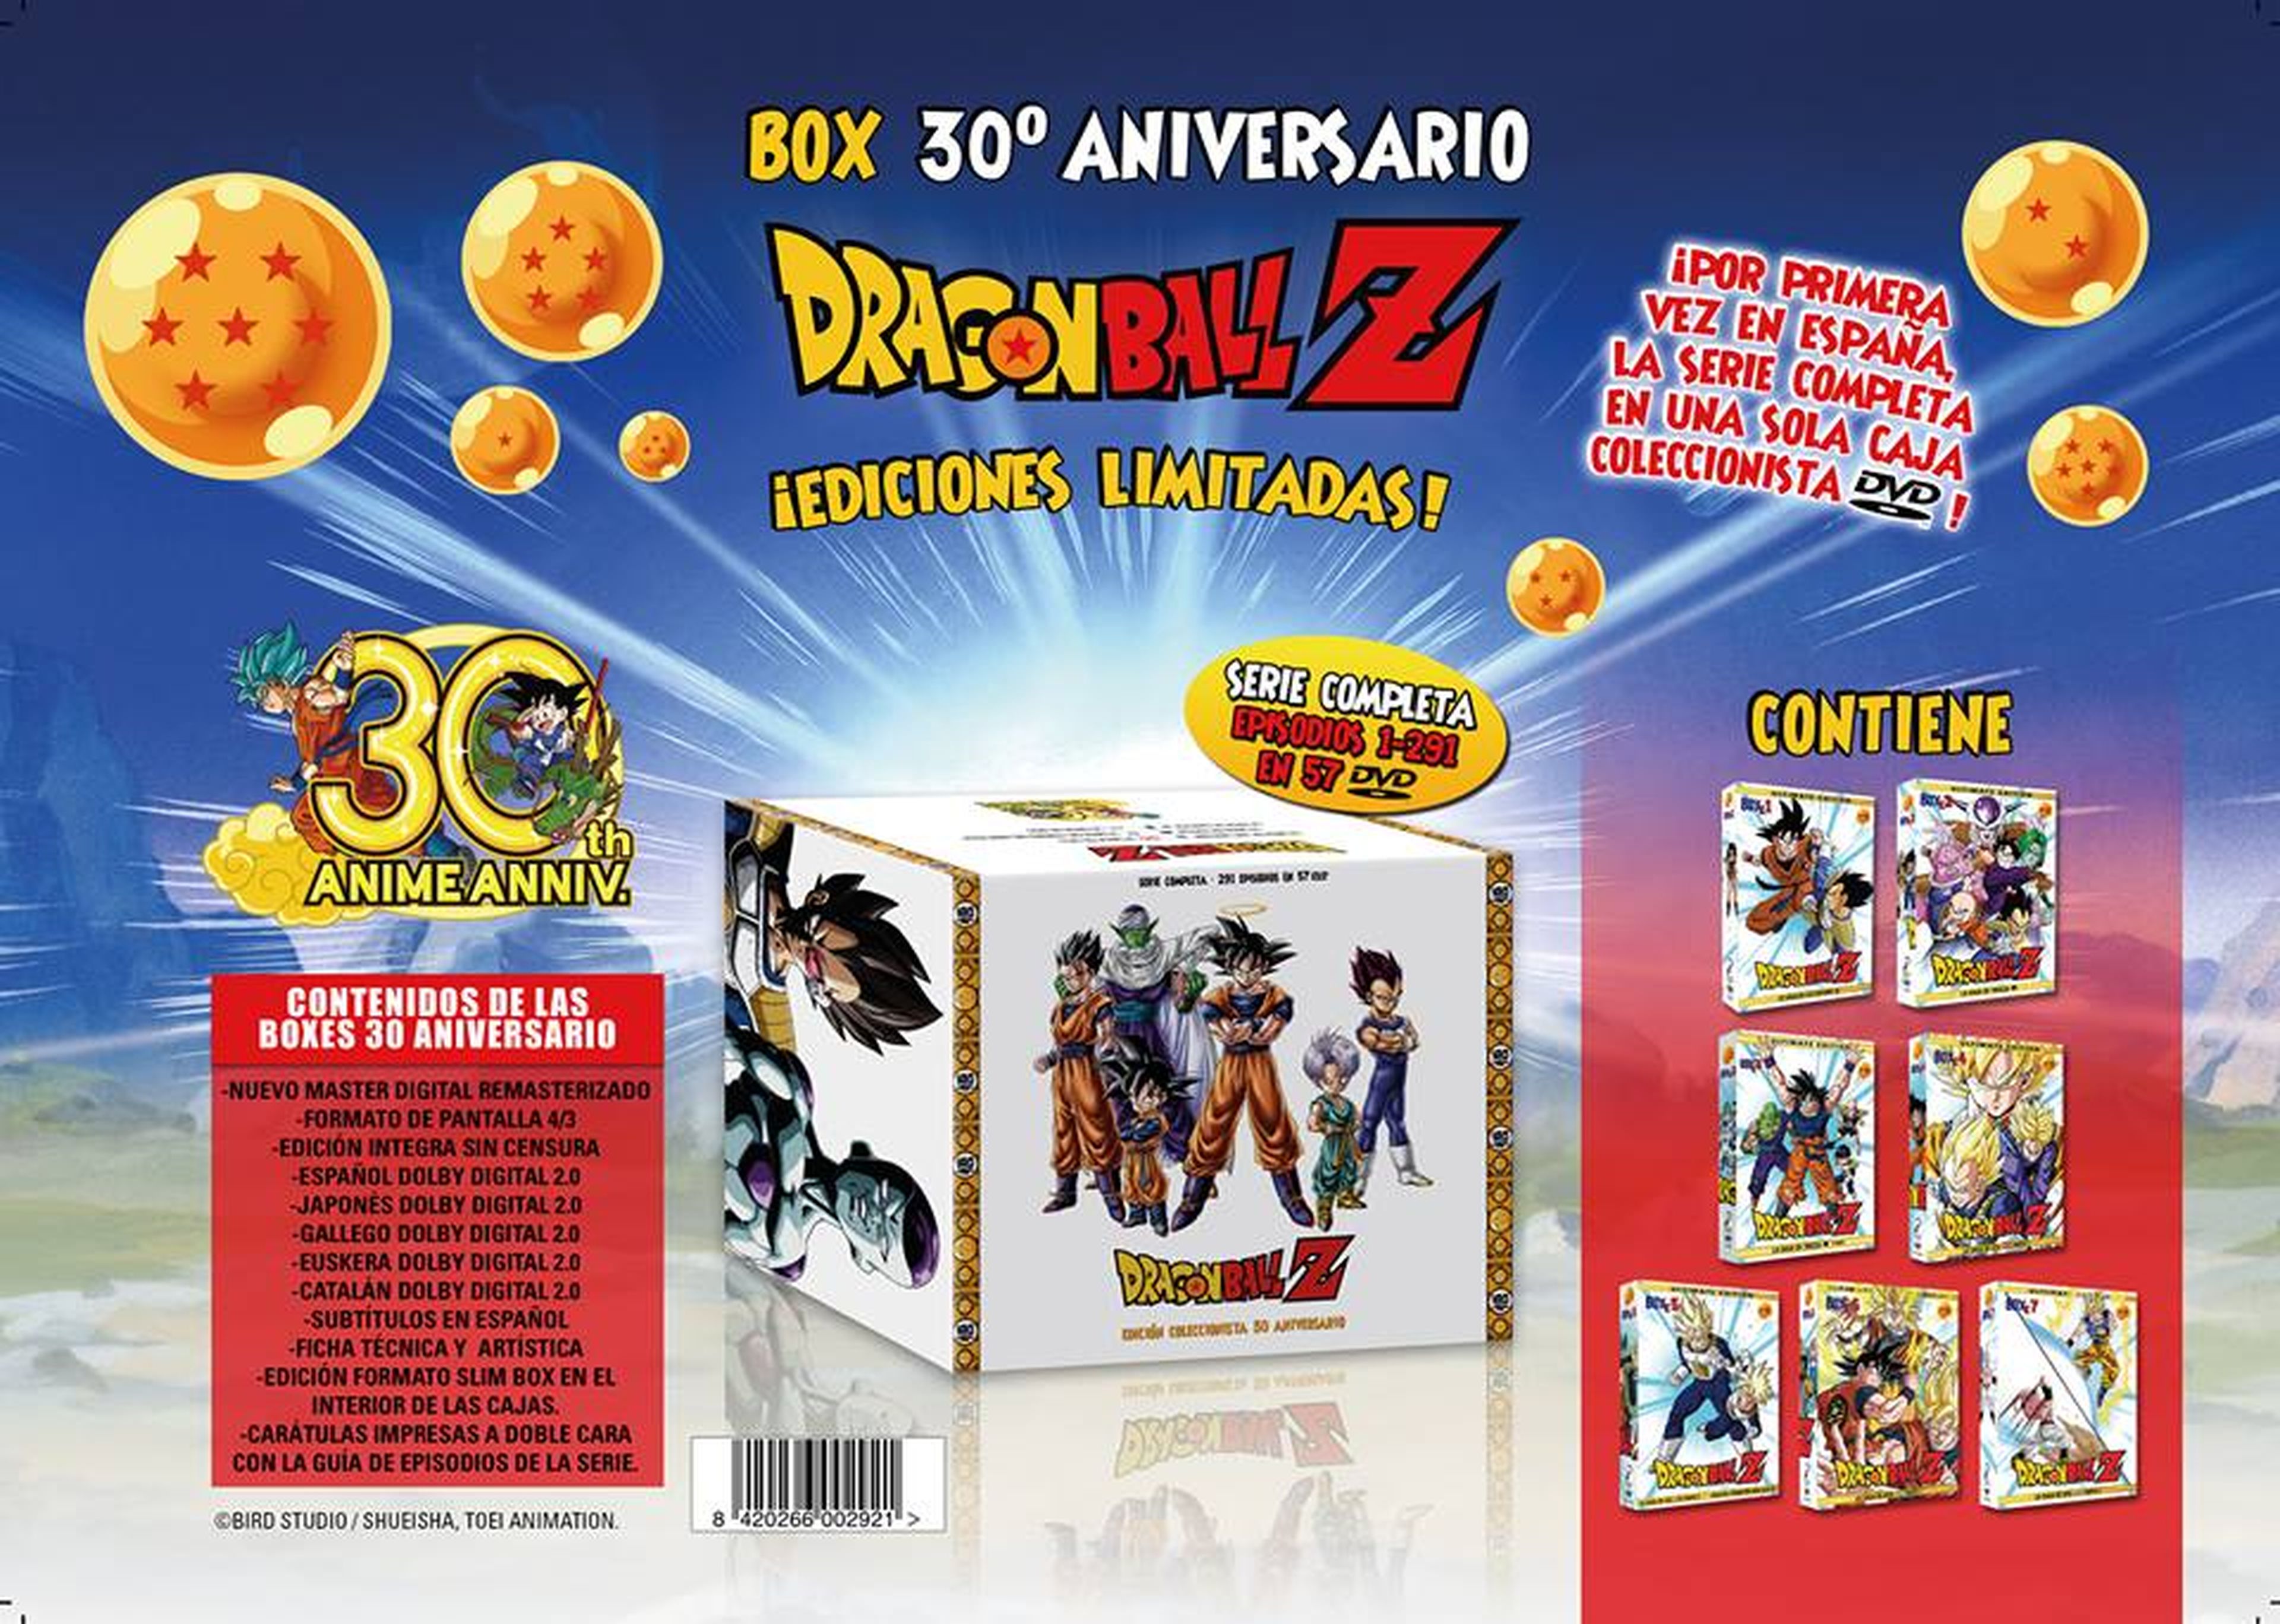 Dragon Ball Edición Limitada